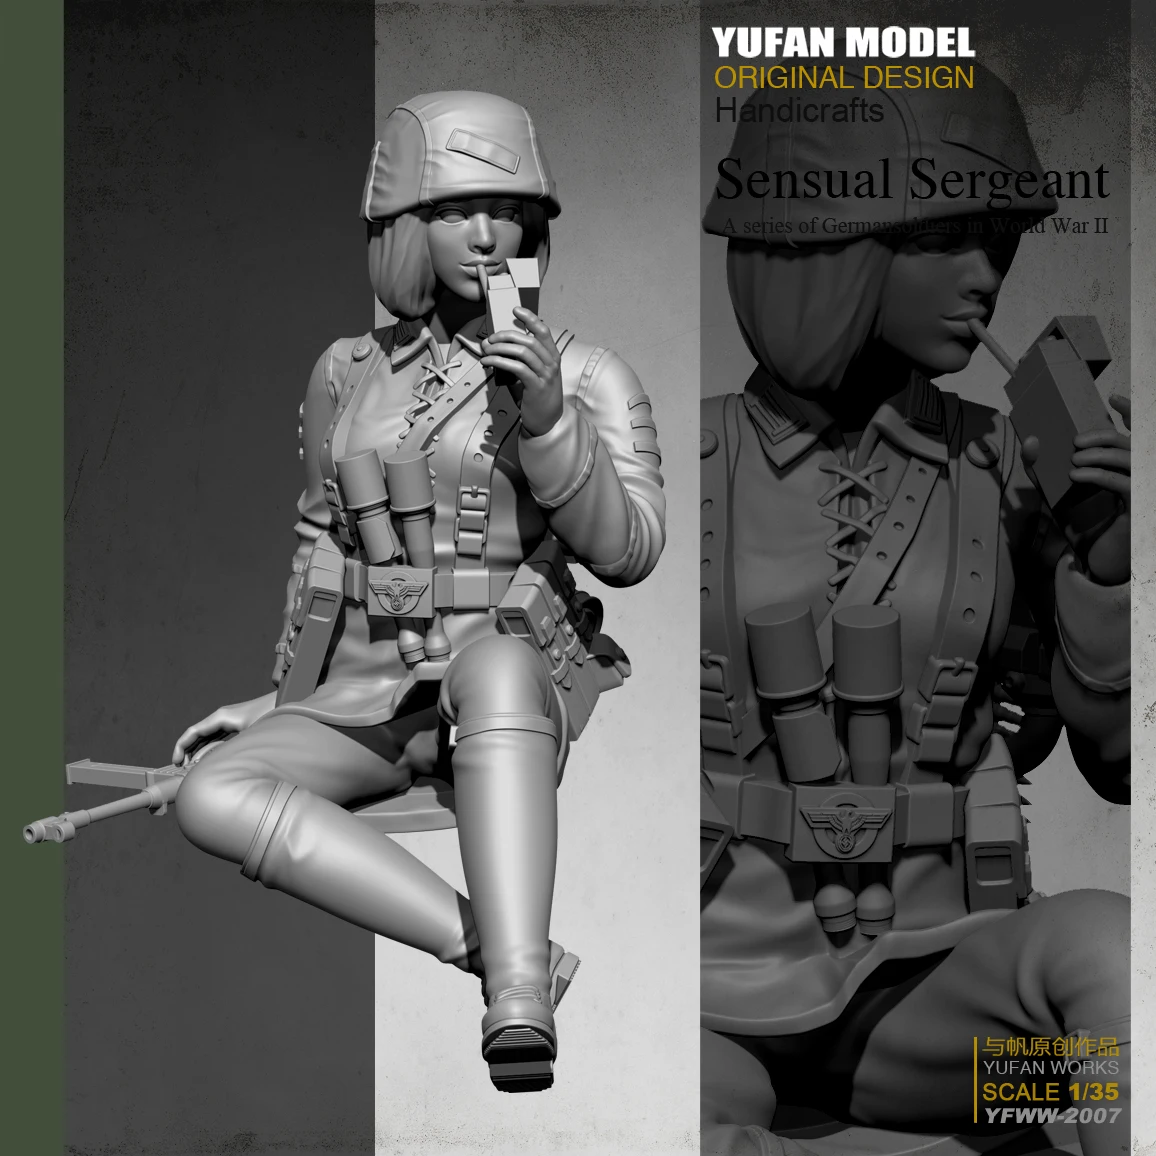 1/35 WWII German Female Soldier Unpainted Model Kits YuFan Model Resin GarageKit 